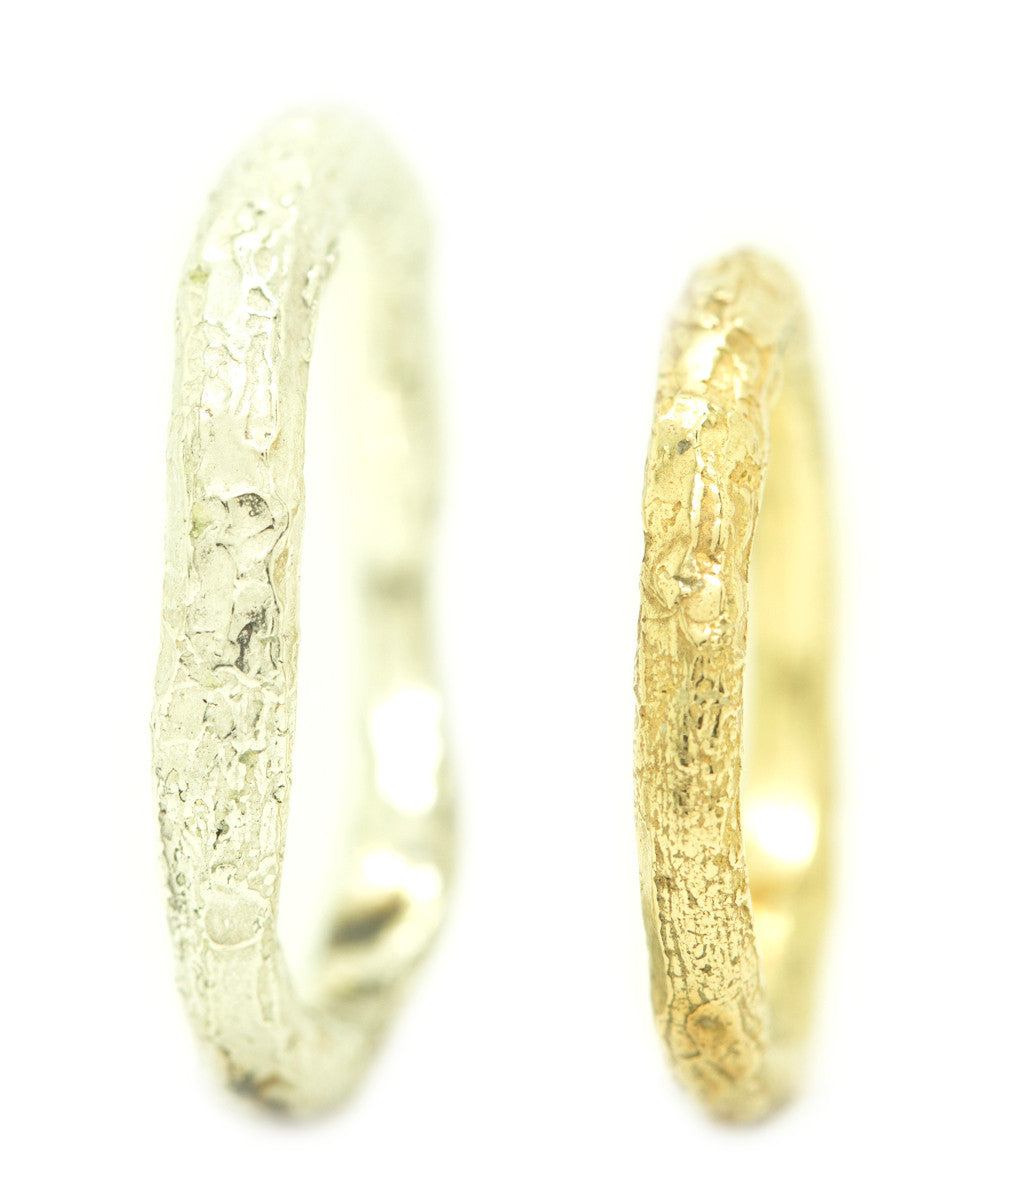 Handgemaakte en fairtrade organische en grillige kreukelende onregelmatige gouden en zilveren ring